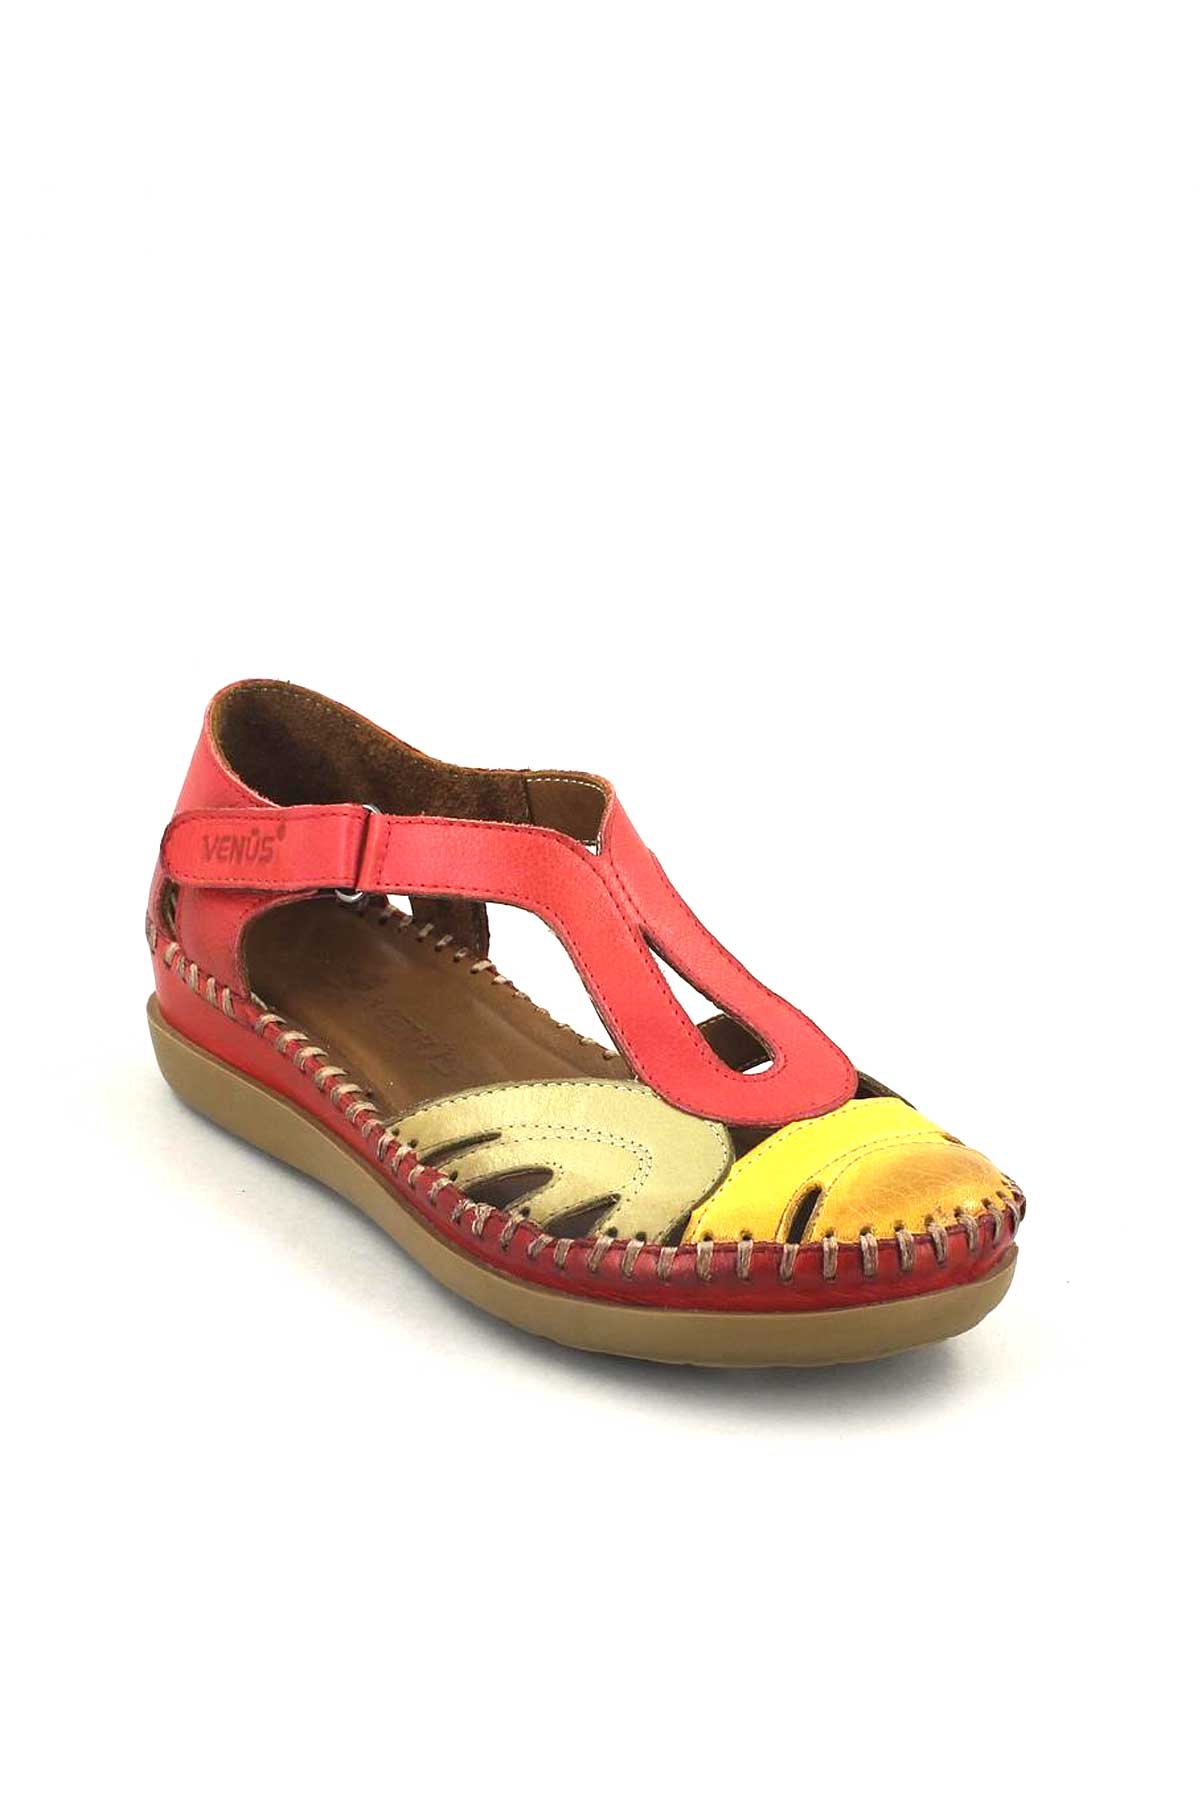 Kadın Comfort Sandalet Kırmızı 18793502